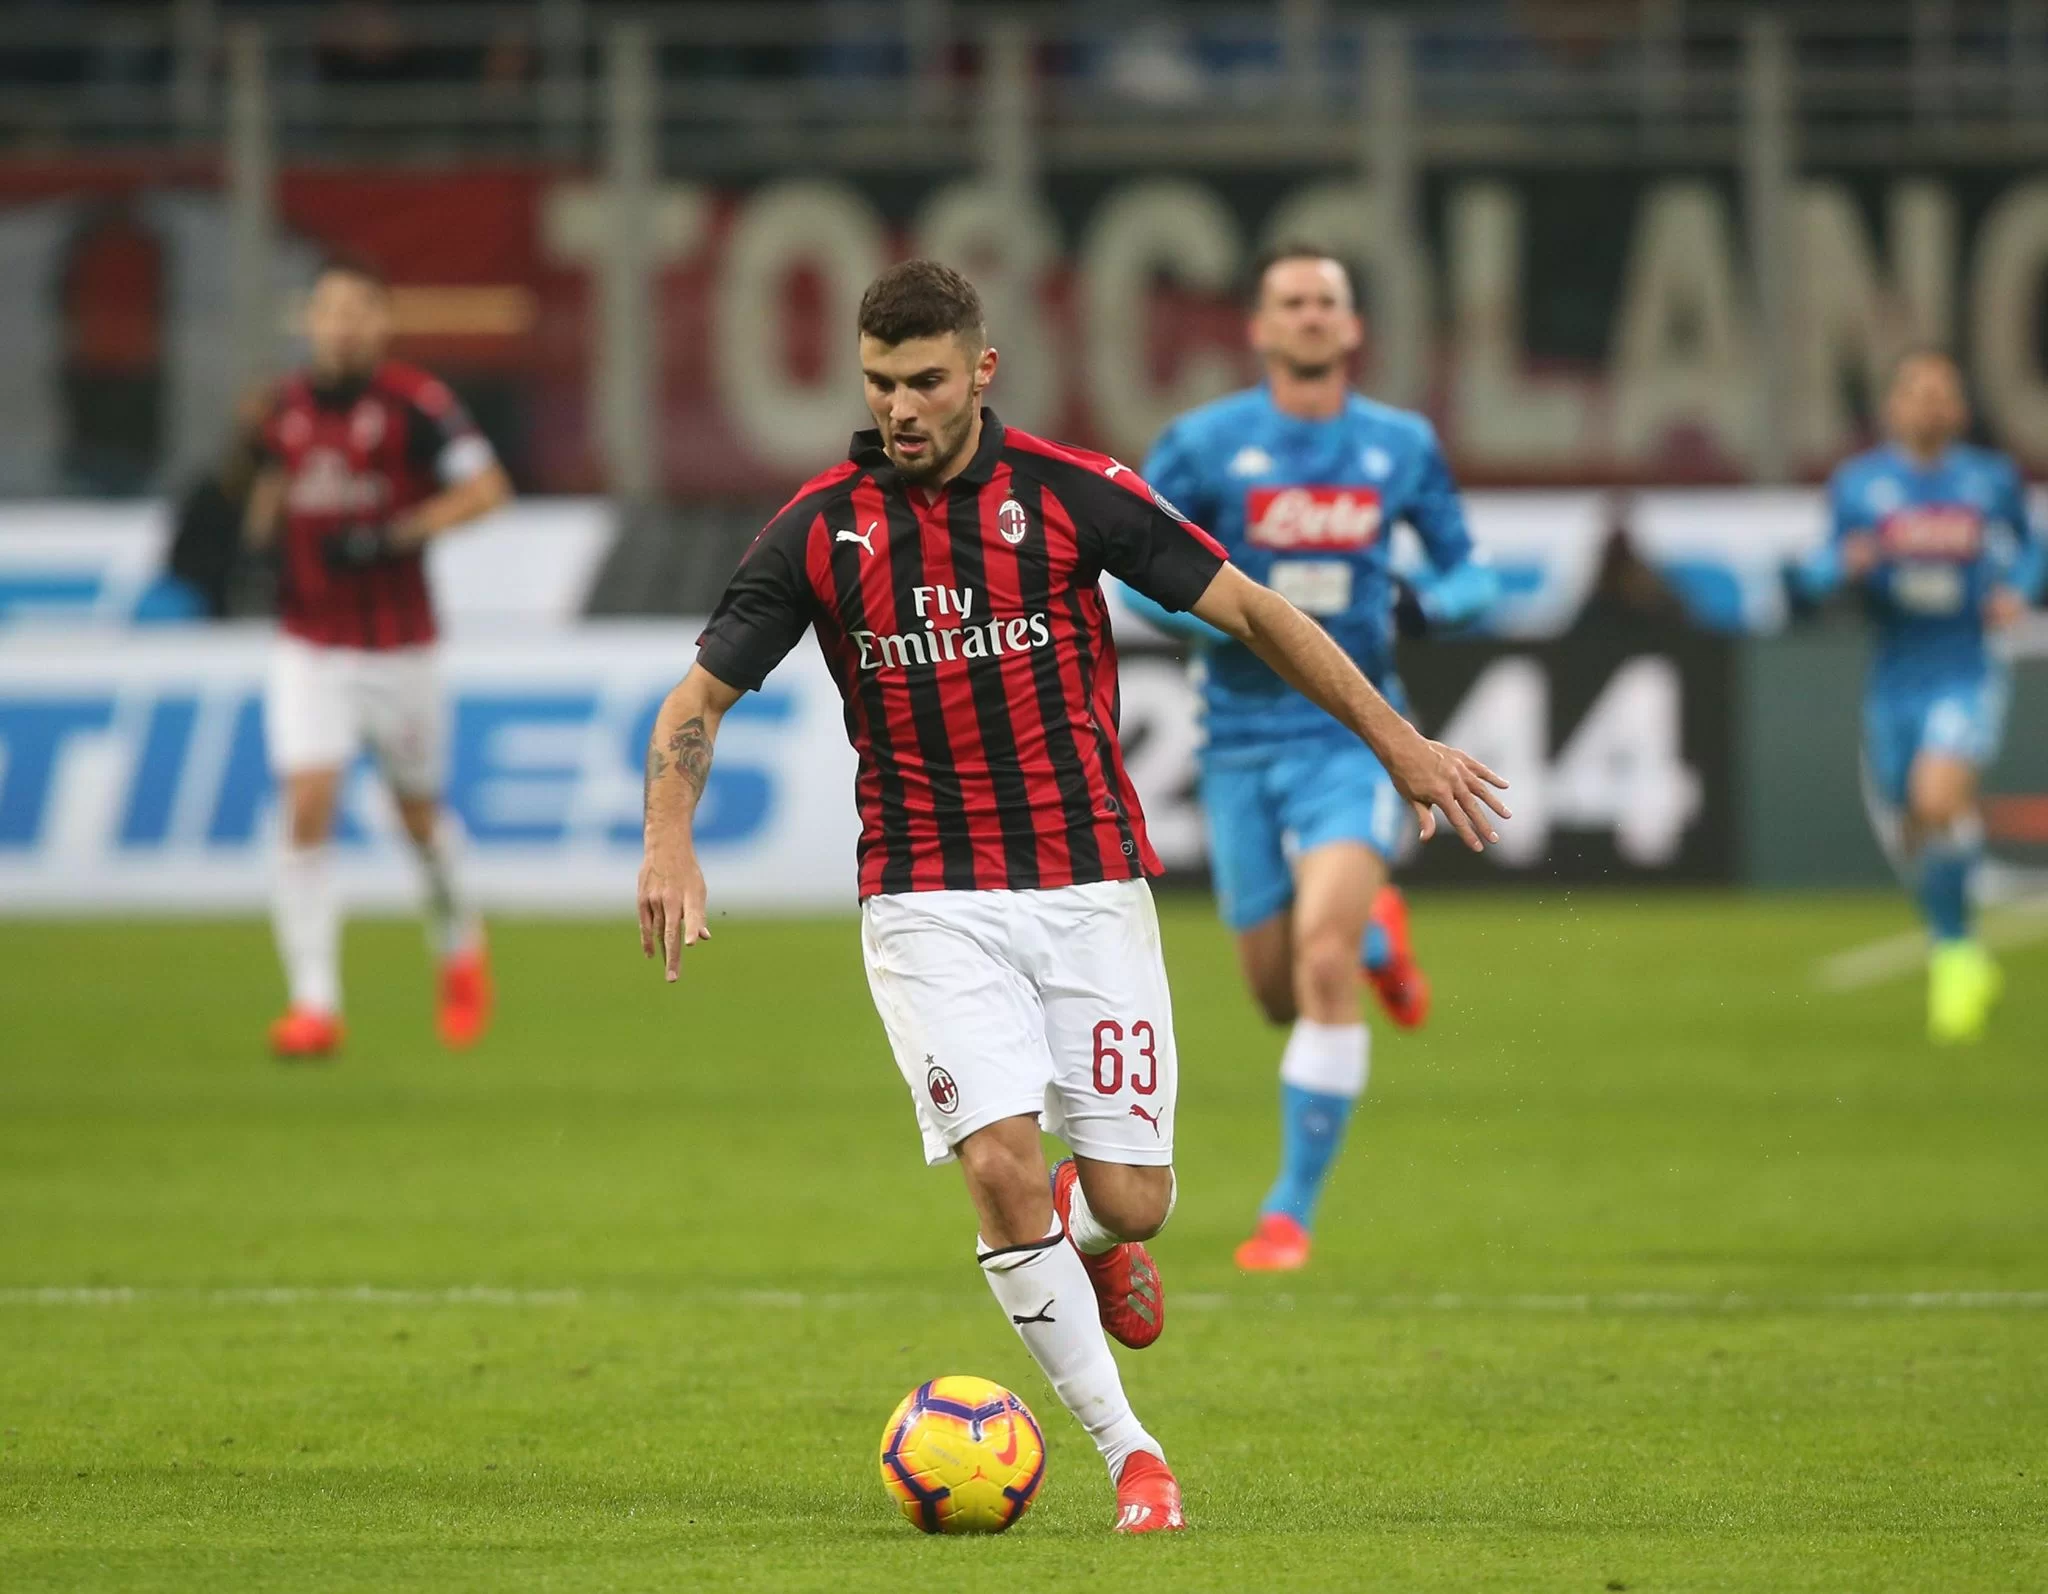 L’agente di Cutrone: “Sta bene al Milan e continuiamo a stare qui”